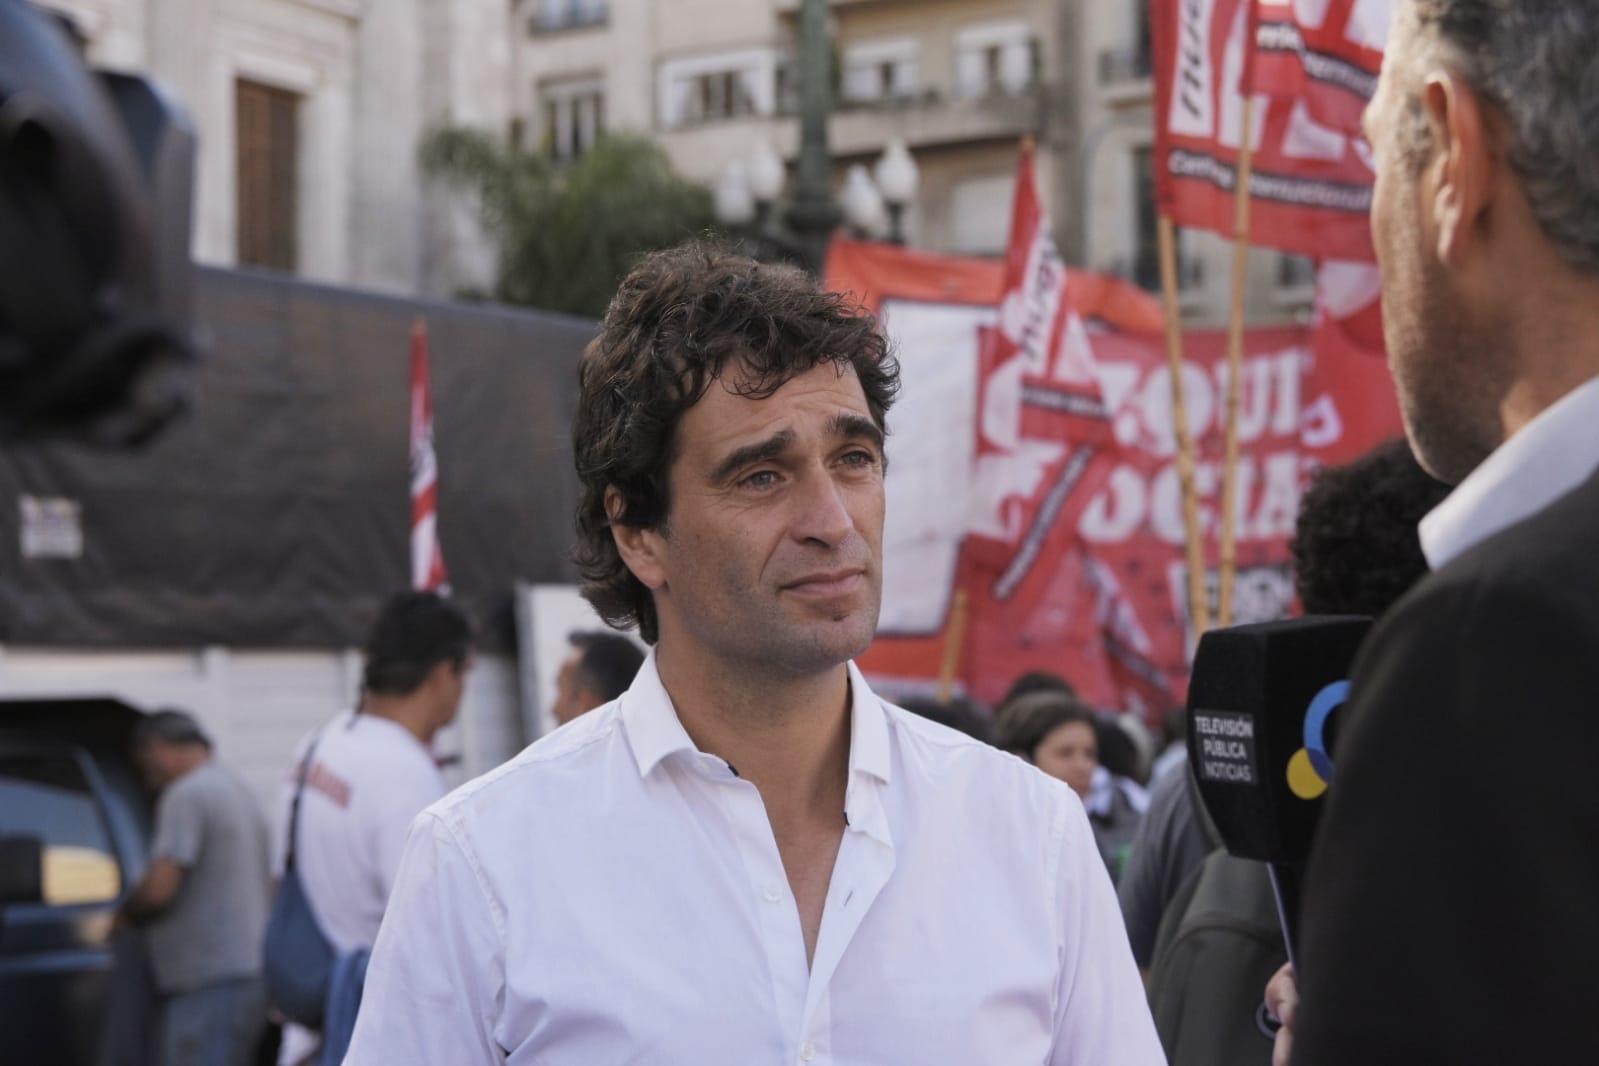 Solano le responde a Marra en la Legislatura: “No vengo a defenderme a mí, sino al derecho del pueblo argentino a manifestarse”